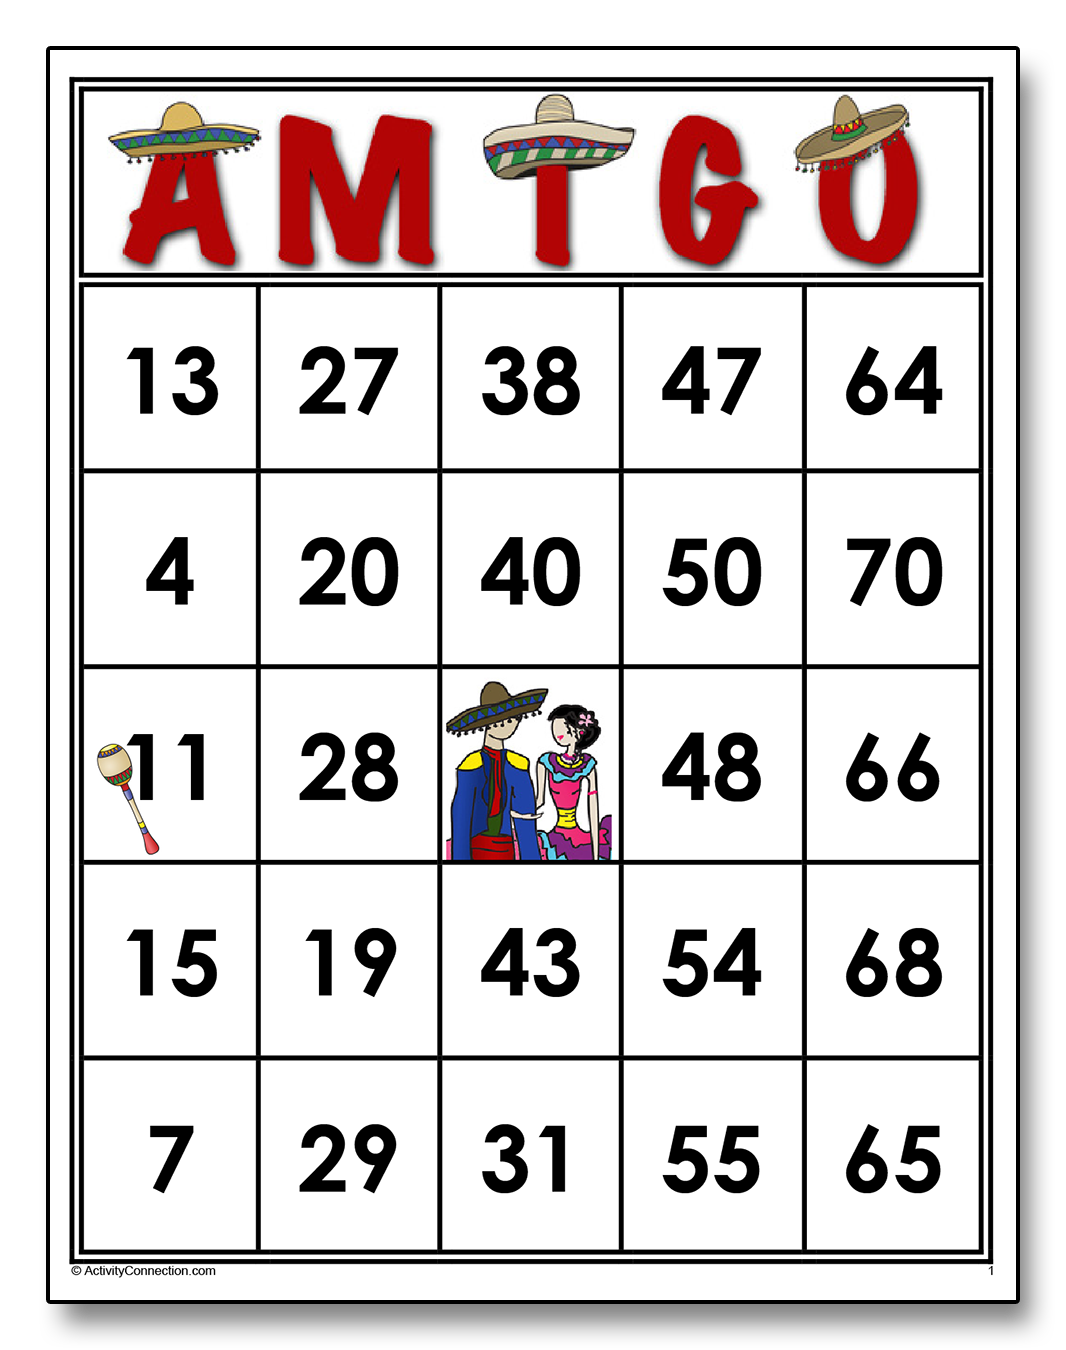 AMIGO Bingo Cards - Activity Connection